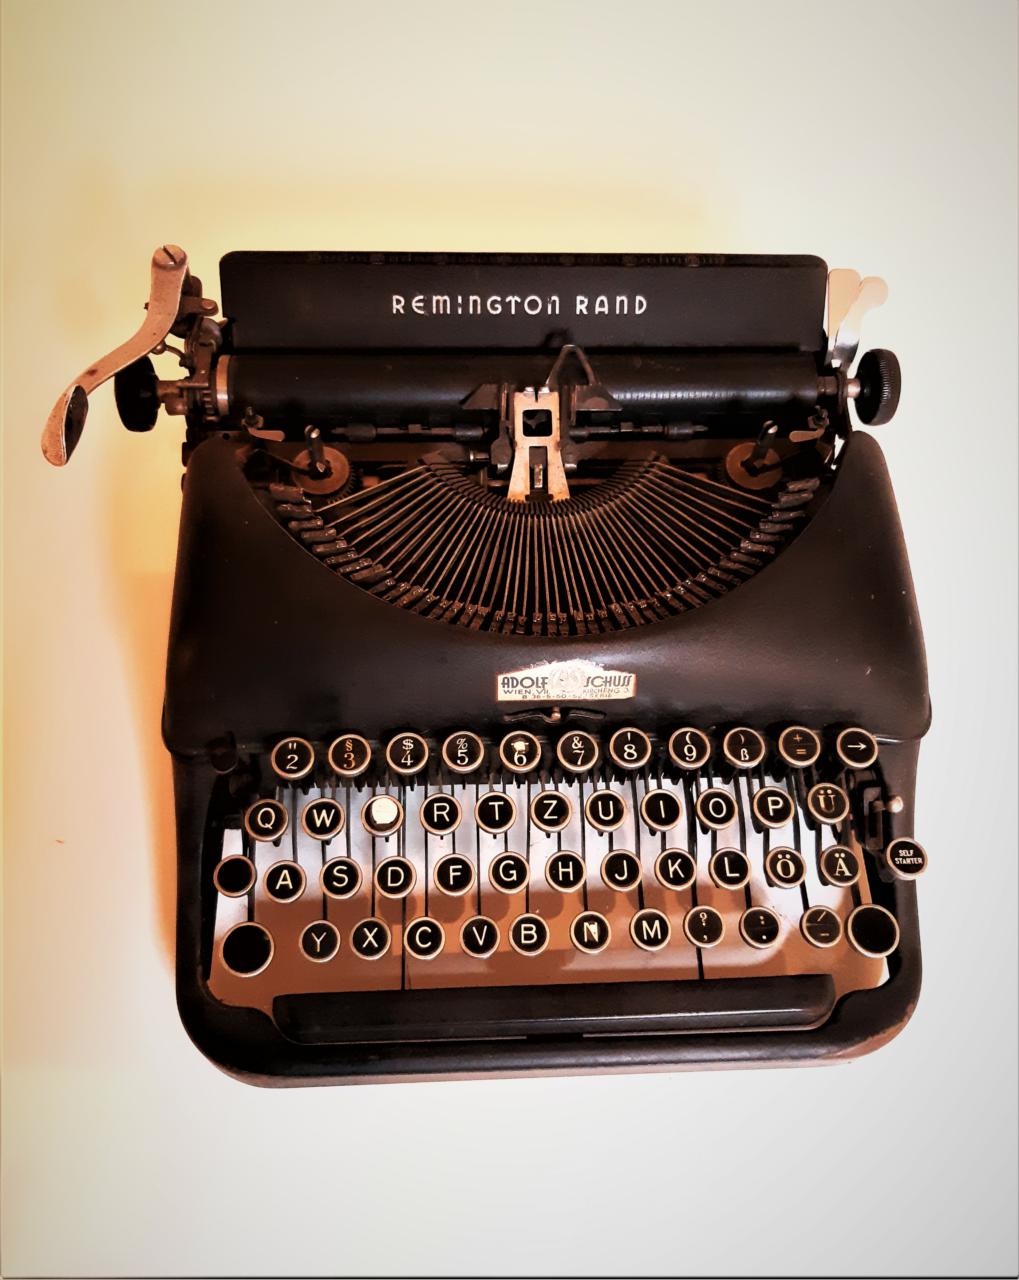 Schreibmaschine, Remington Rand, um 1940